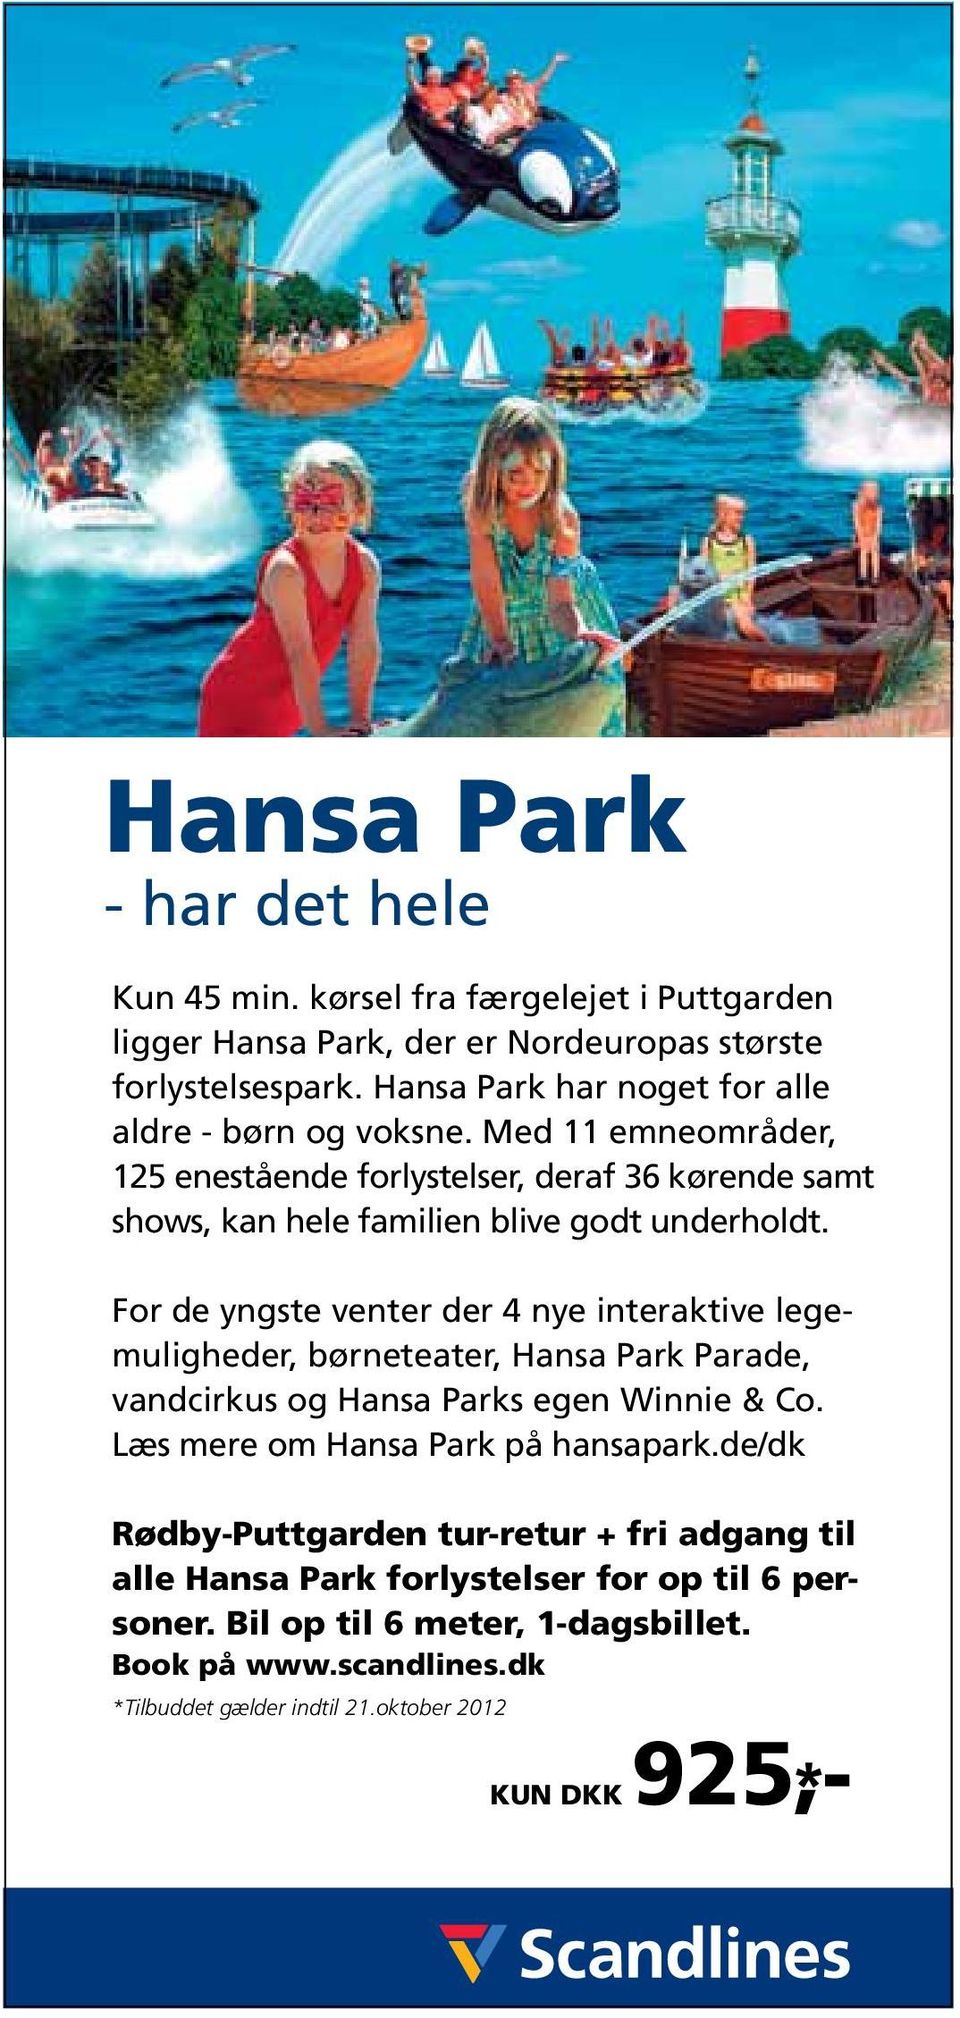 For de yngste venter der 4 nye interaktive legemuligheder, børneteater, Hansa Park Parade, vandcirkus og Hansa Parks egen Winnie & Co. Læs mere om Hansa Park på hansapark.